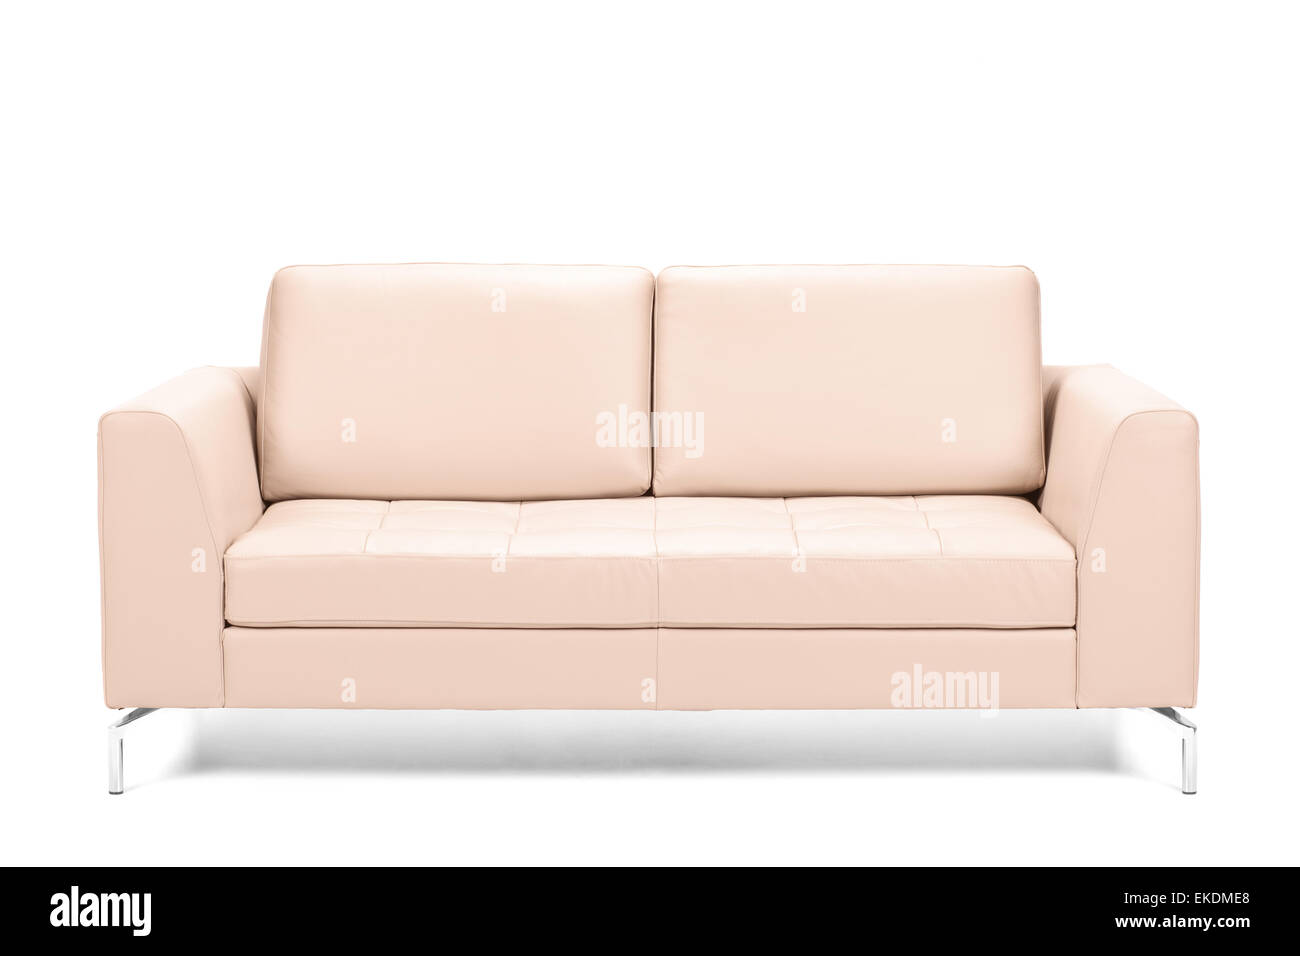 Canapé en cuir moderne isolé sur fond blanc Banque D'Images